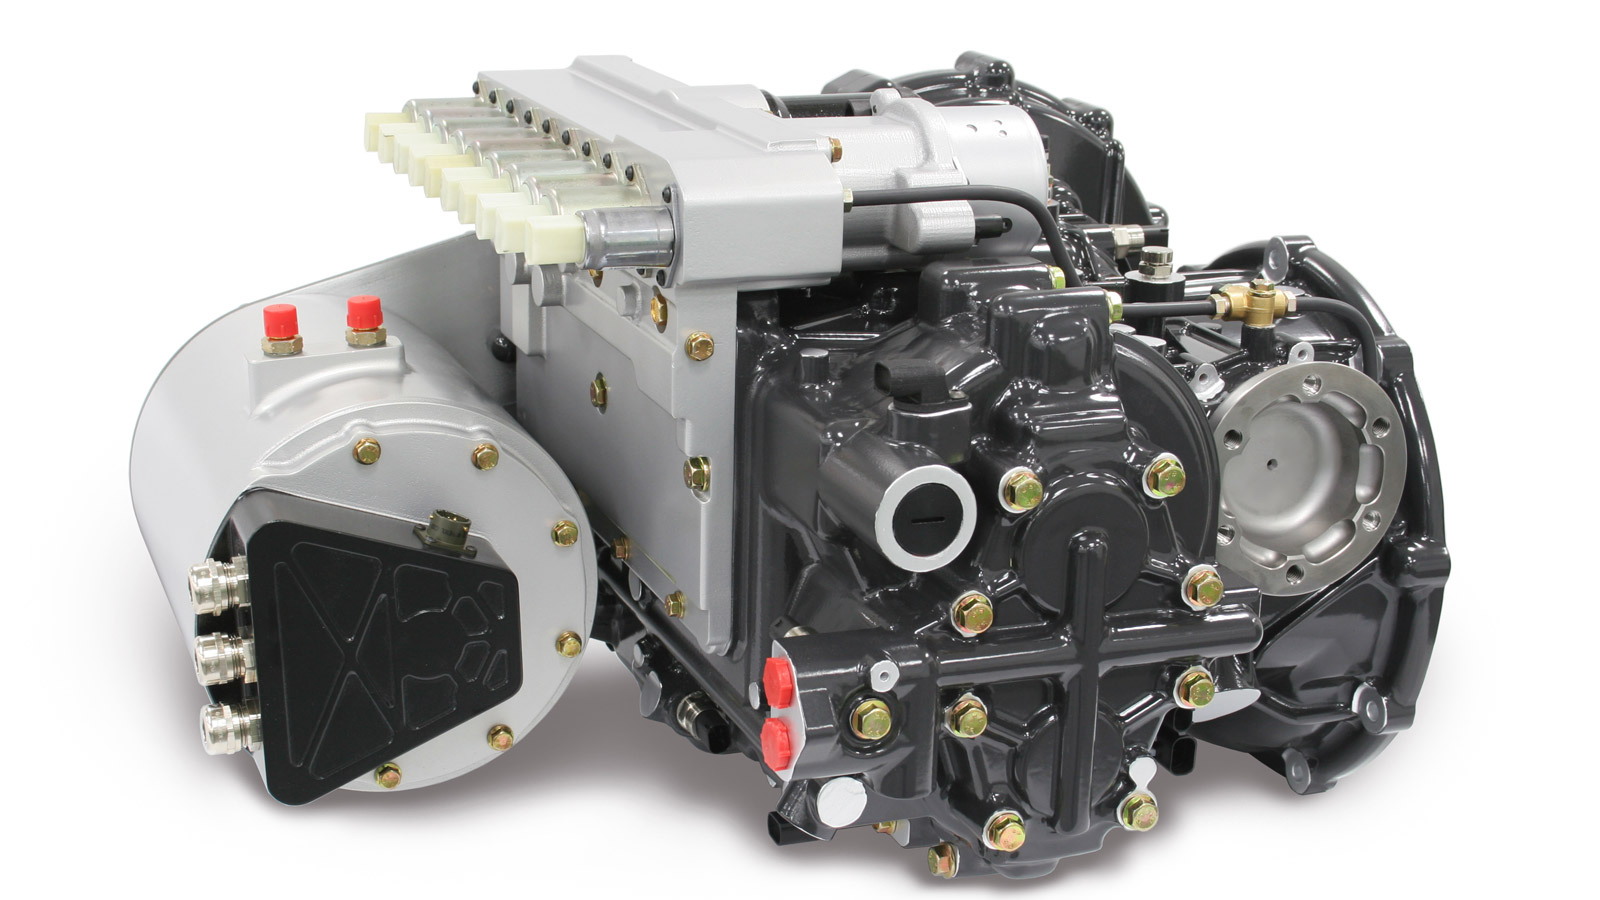 Xtrac 1010 hybridized automated manual transmission